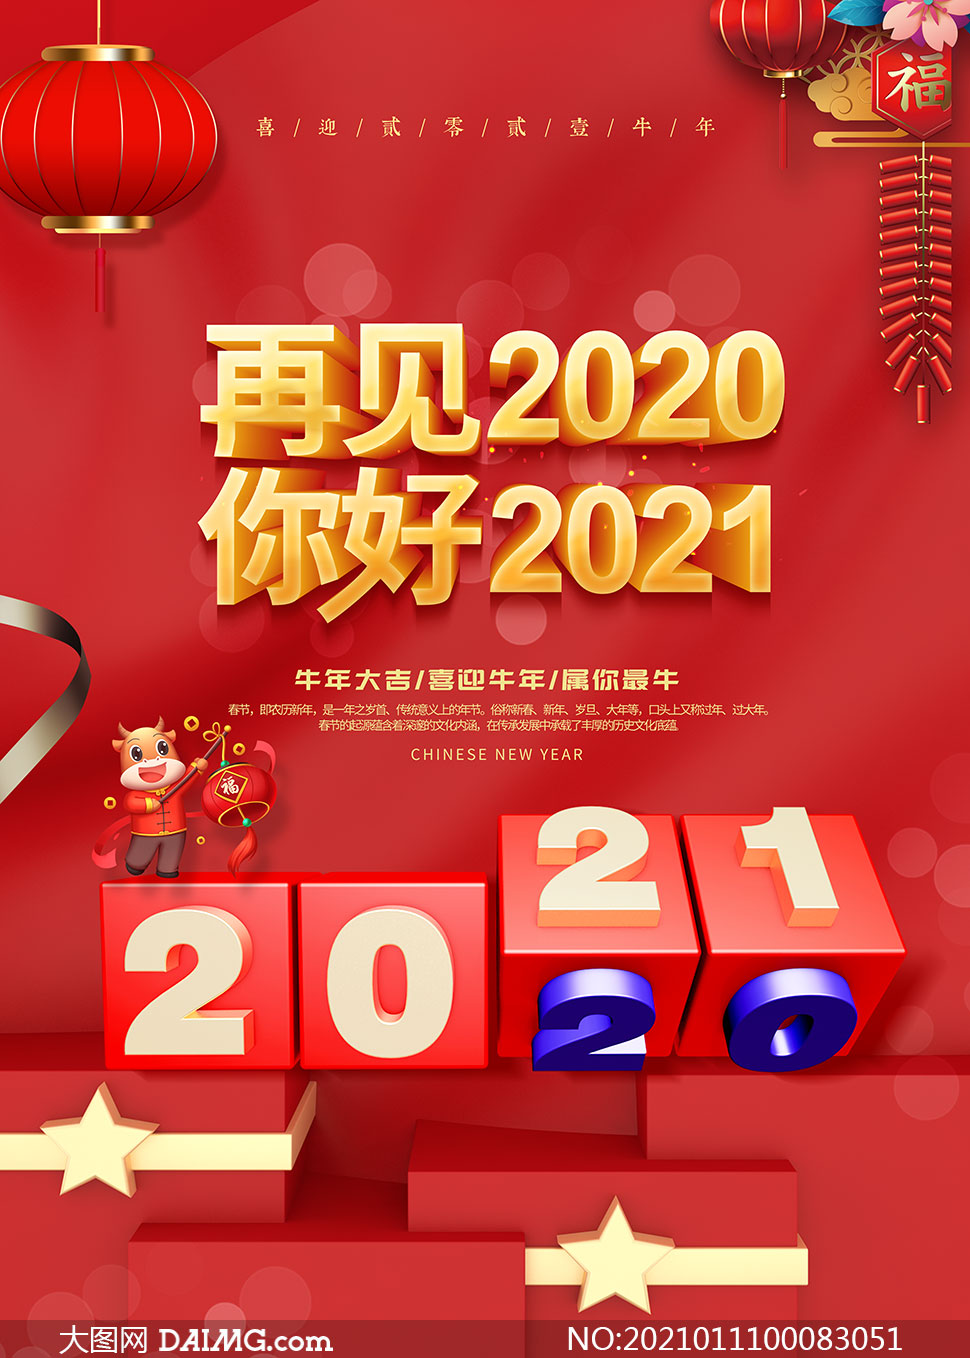 2021创意春节海报设计模板psd素材